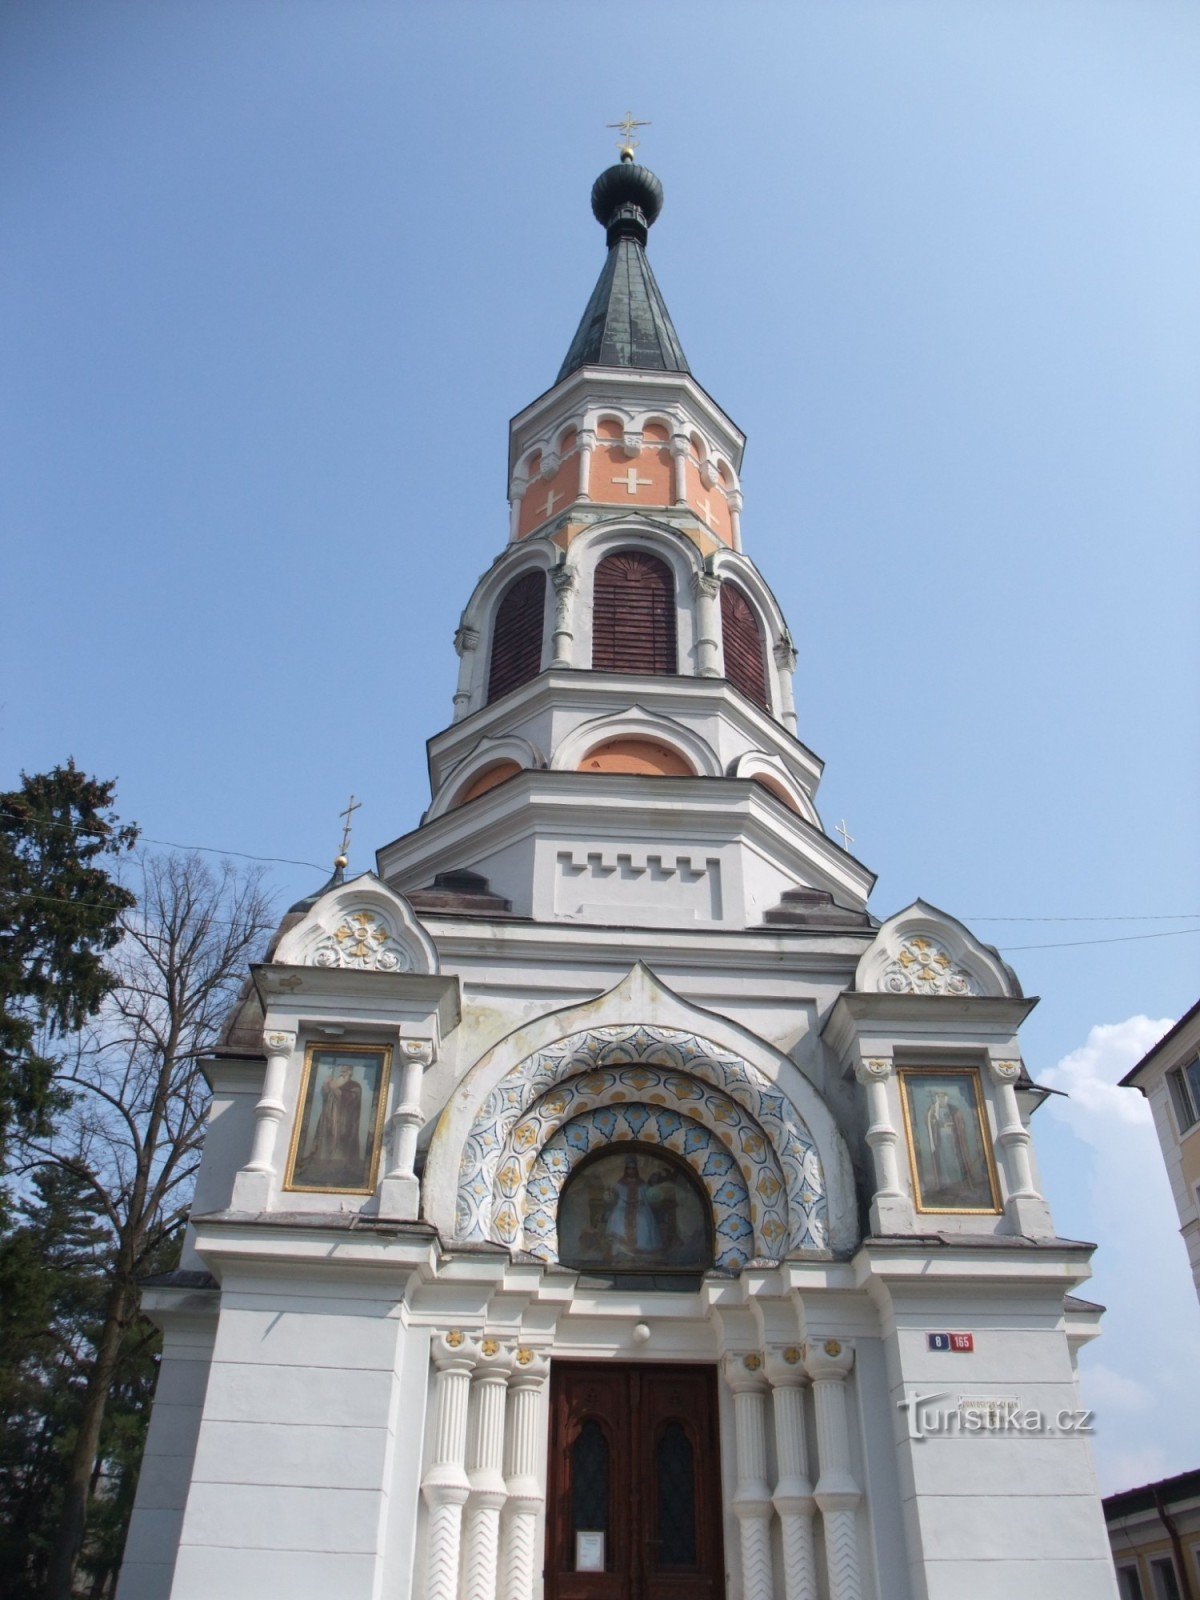 St. Olgas ortodoxa kyrka i Františkovy Lázně